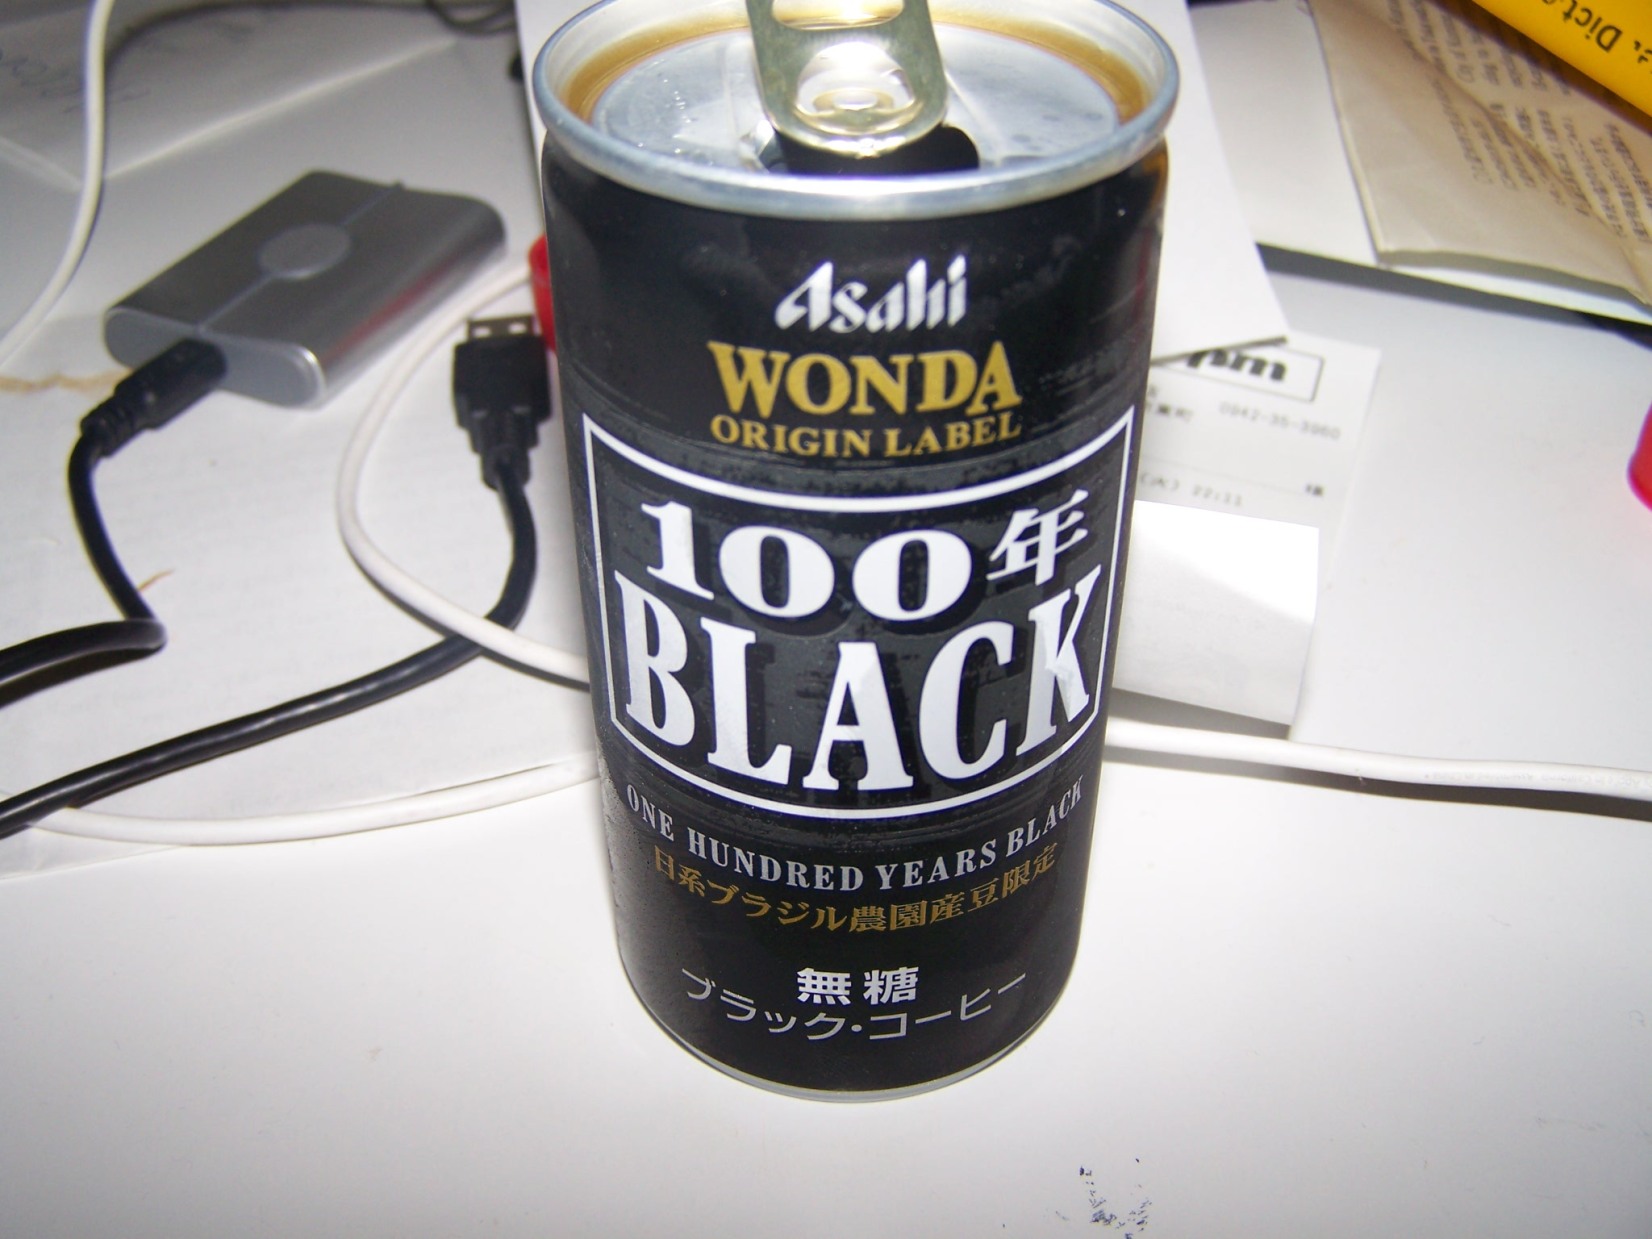 100% Black